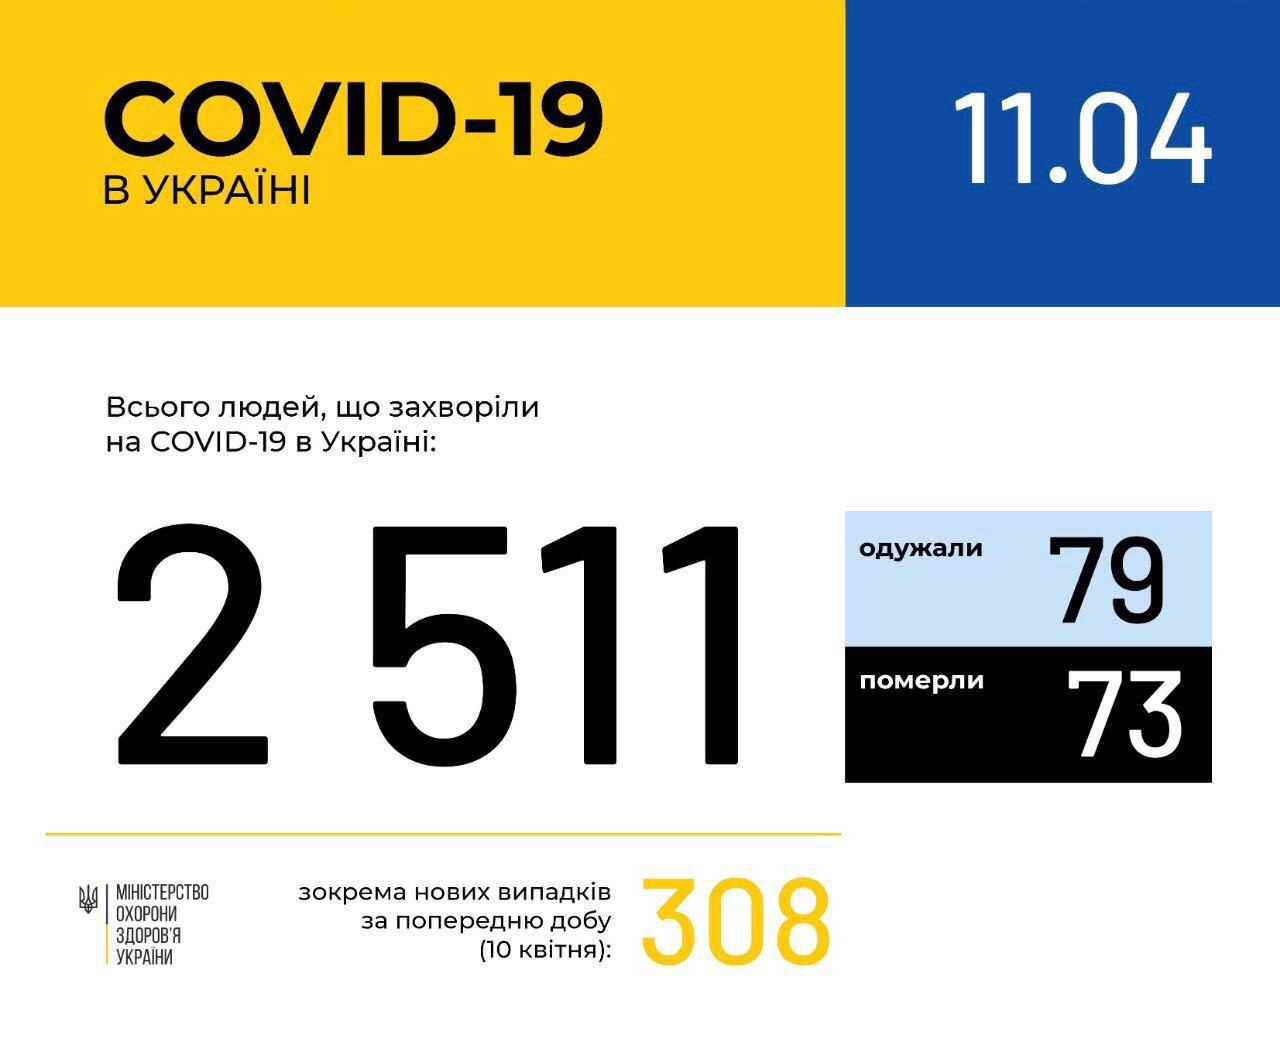 В Україні зафіксовано 2511 випадків коронавірусної хвороби COVID-19, - МОЗ